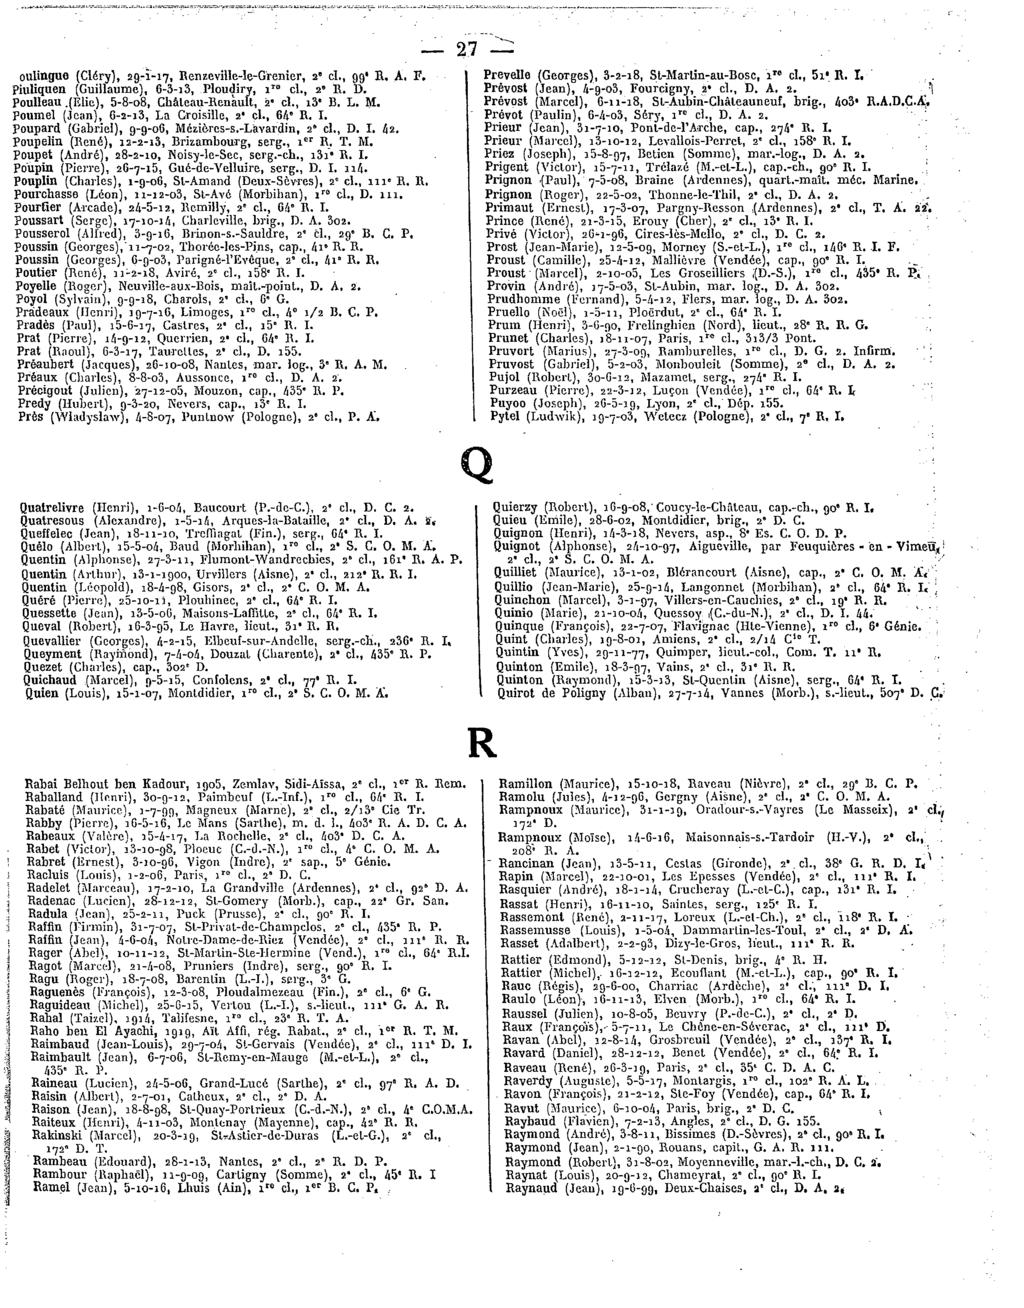 oulinguo (Cléry),29-1-17, Renzeville-le-Grenier, 2' cl.,99'r.a-f. piuliquen(guillaume), 6-3-i3,Ploudiry, 1 cl.,2' R. D. Peulleau.(Elie),5-8-o8,Château-Renault, 2"cl.,i3"B.L.M.